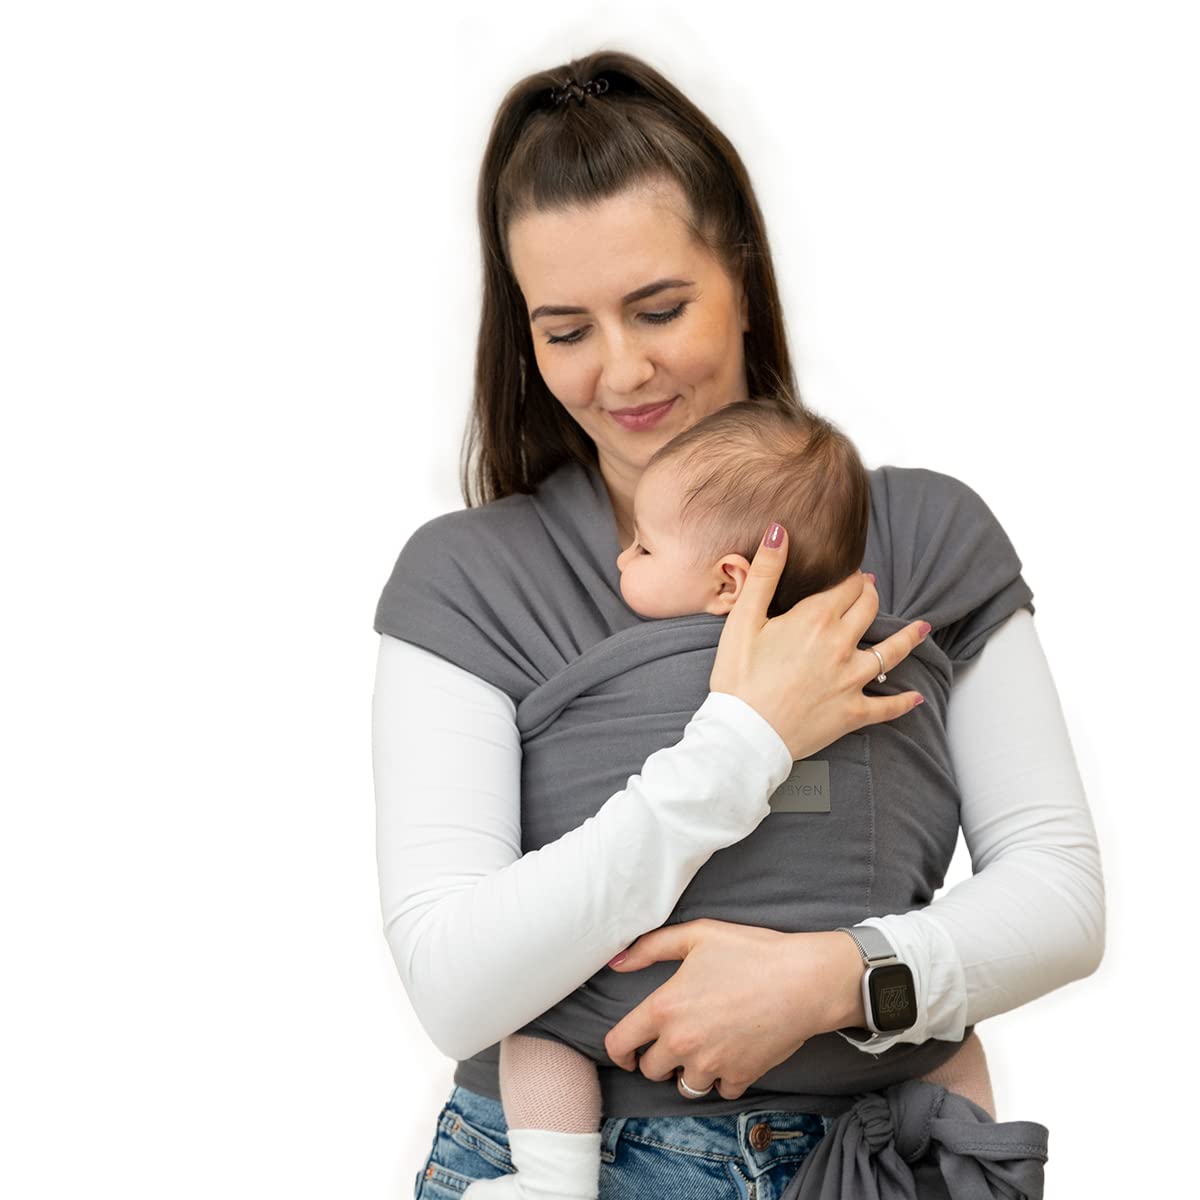 MABYEN Baby Tragetuch Neugeborene | Babytrage für Neugeborene ab Geburt - Elastisches Tragetuch Baby - Baby Trage mit praktischer Aufbewahrungstasche - Stärkt die Bindung zwischen dir und deinem Baby